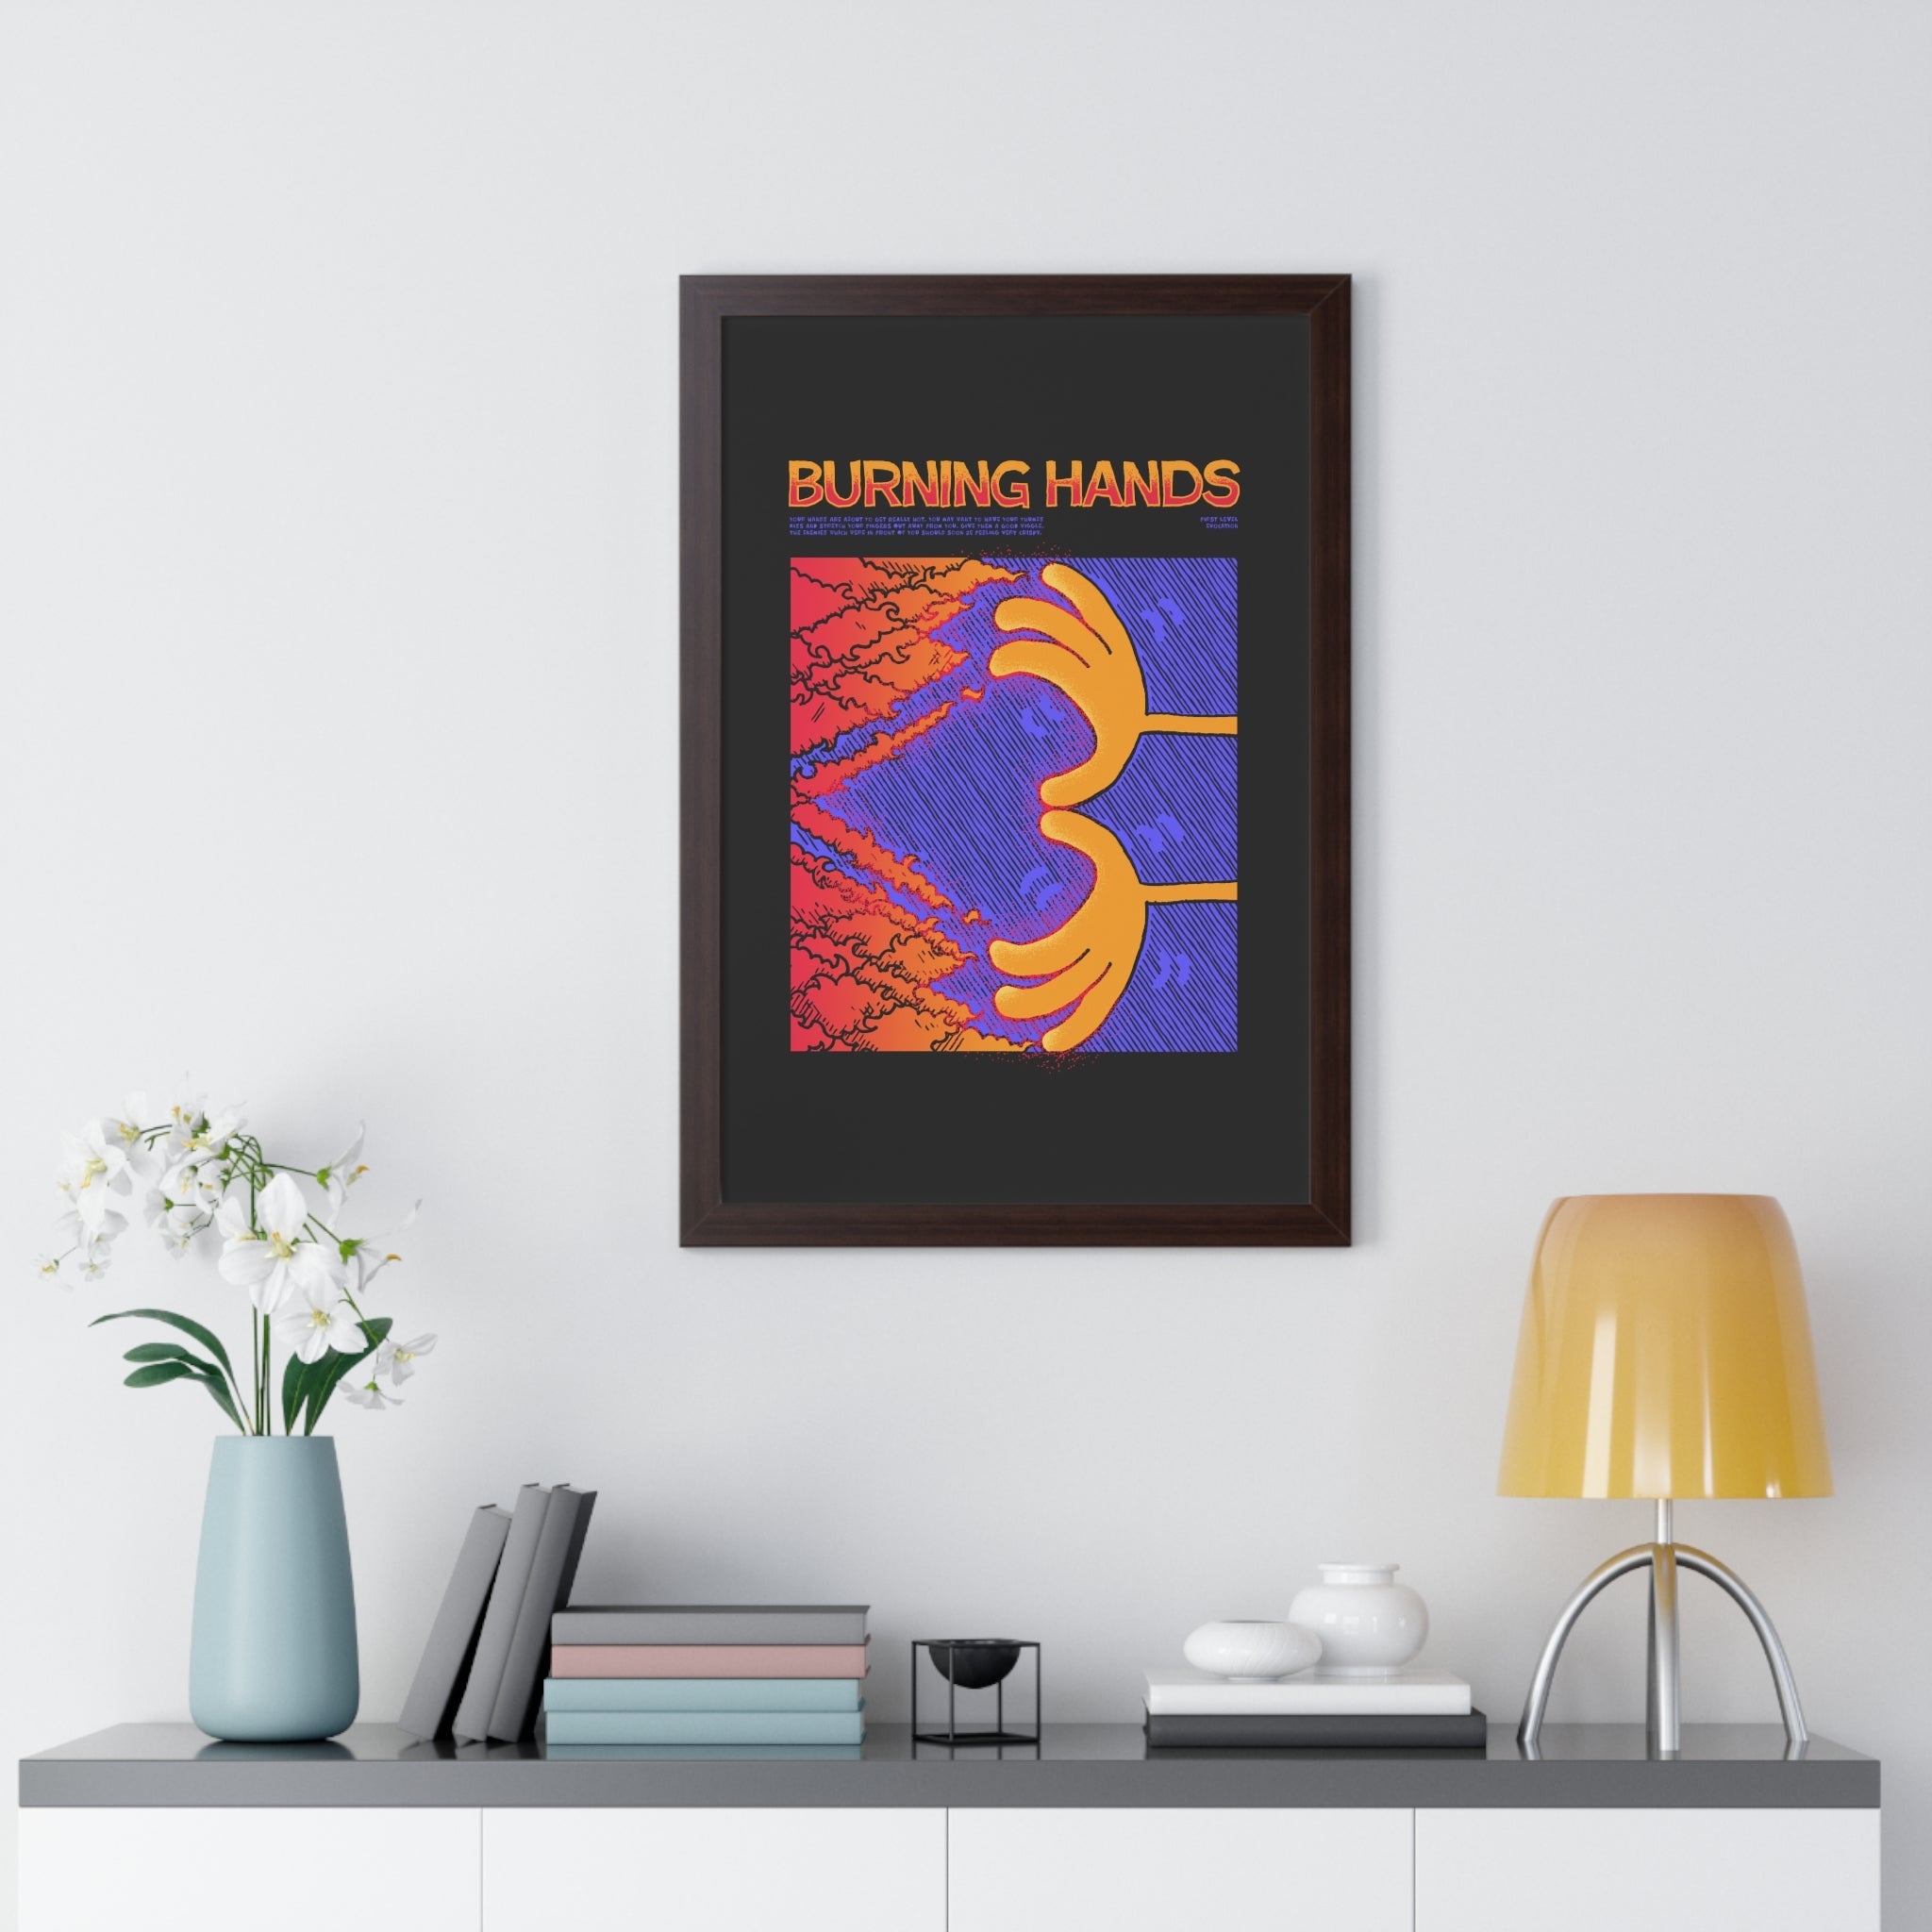 Burning Hands | Framed Poster - Framed Poster - Ace of Gnomes - 10281493118602416059